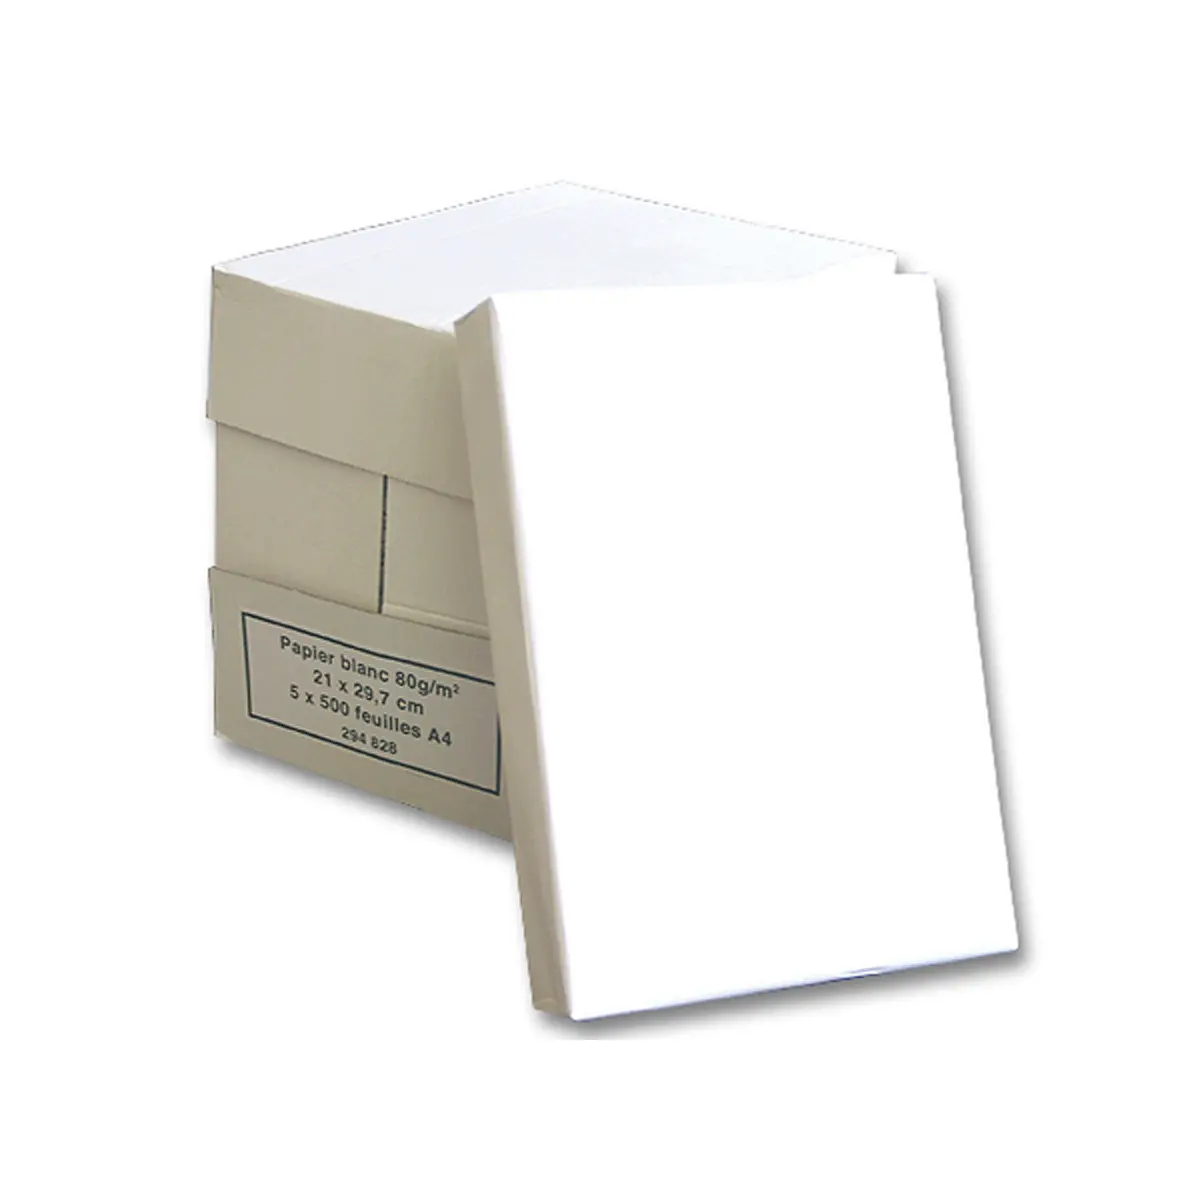 Papier blanc - A4 - 75g - 5 ramettes de 500 feuilles - Générique